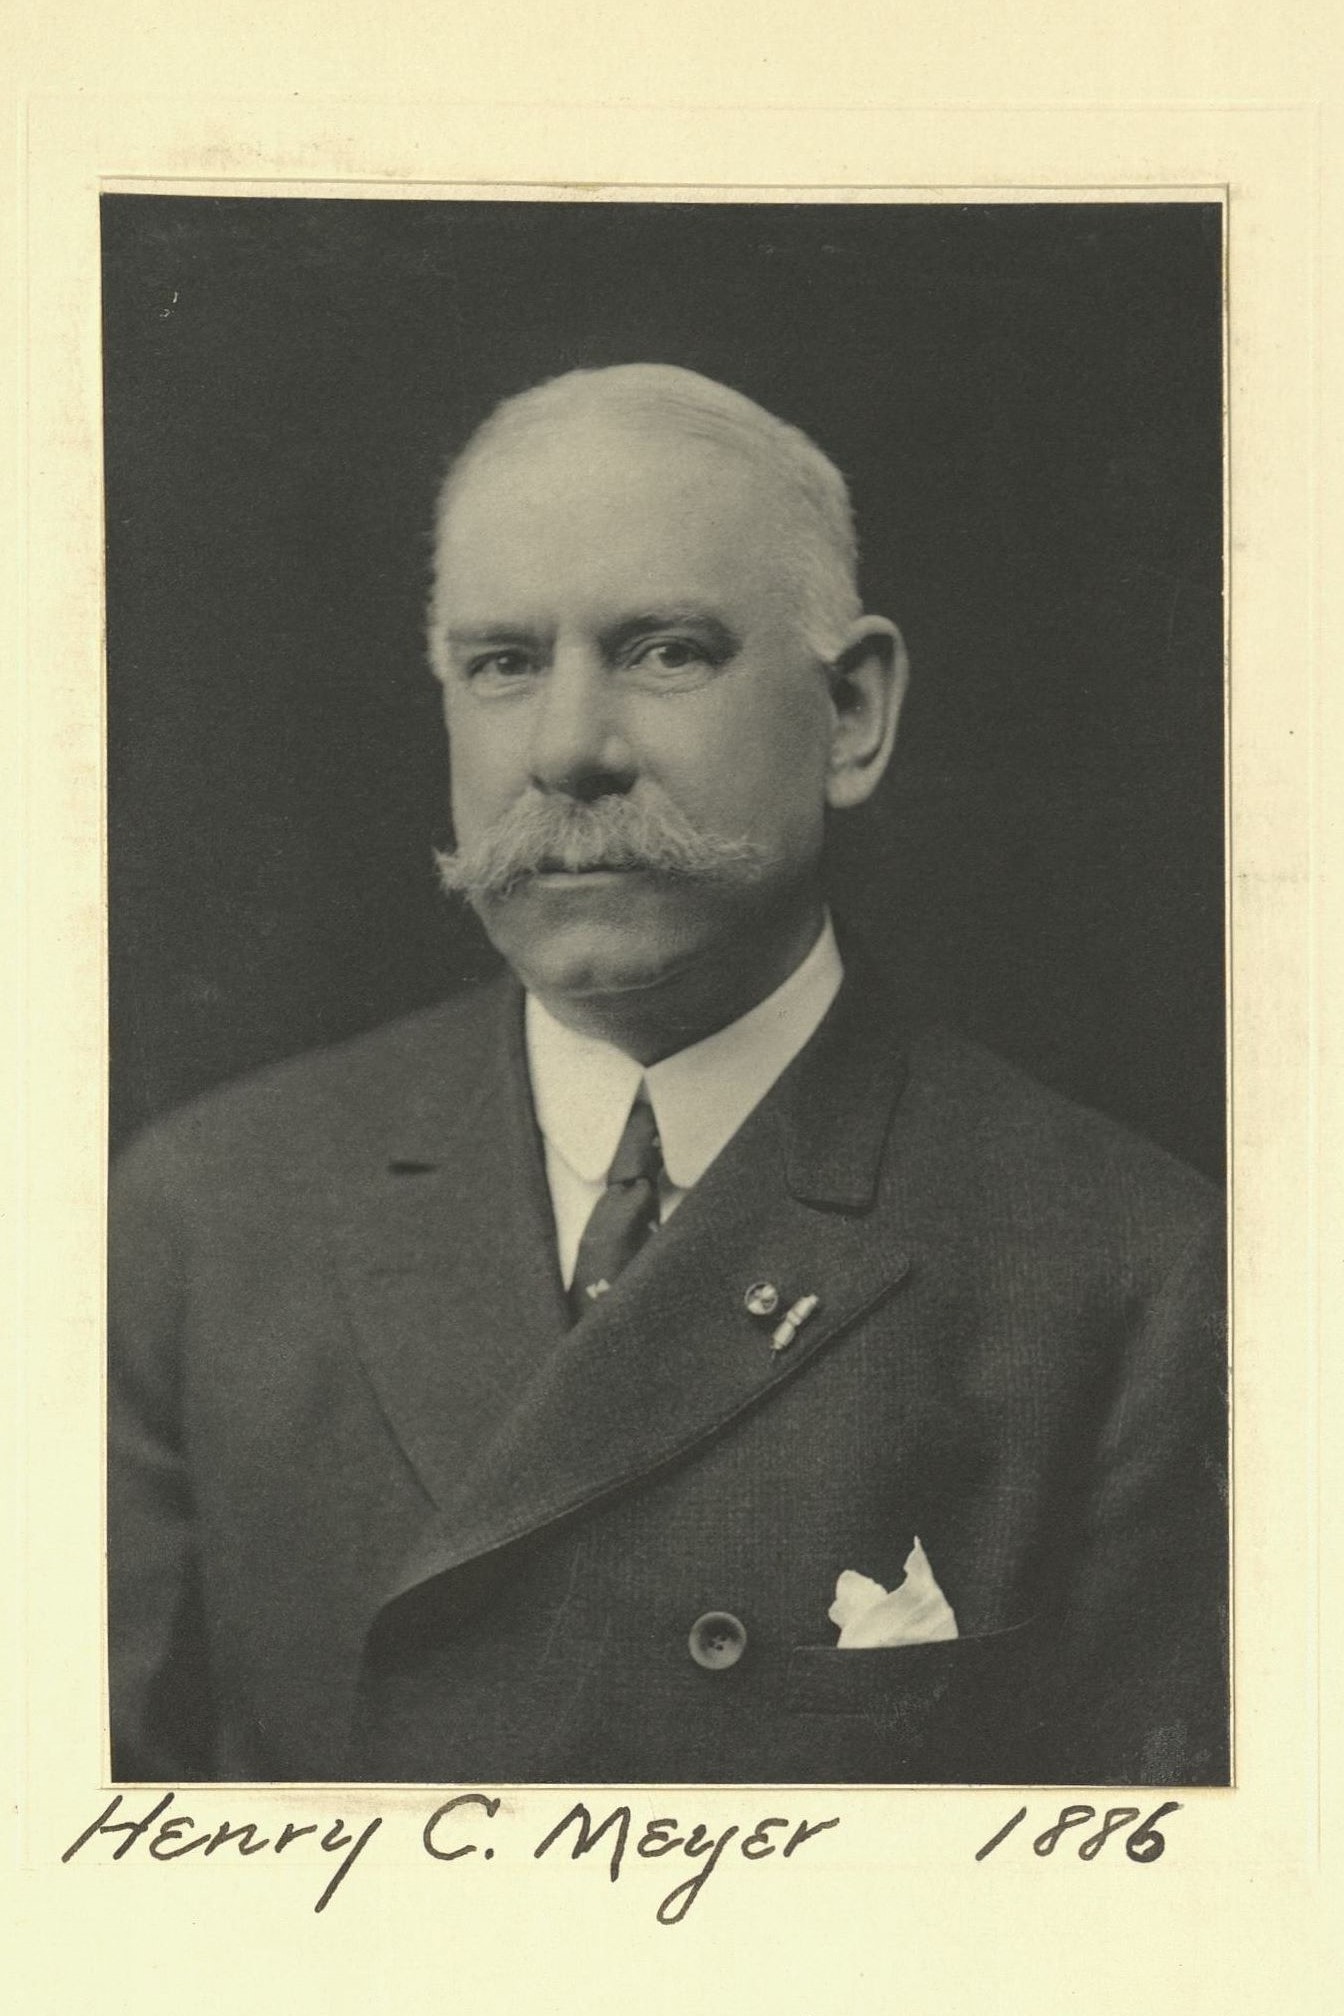 Member portrait of Henry C. Meyer